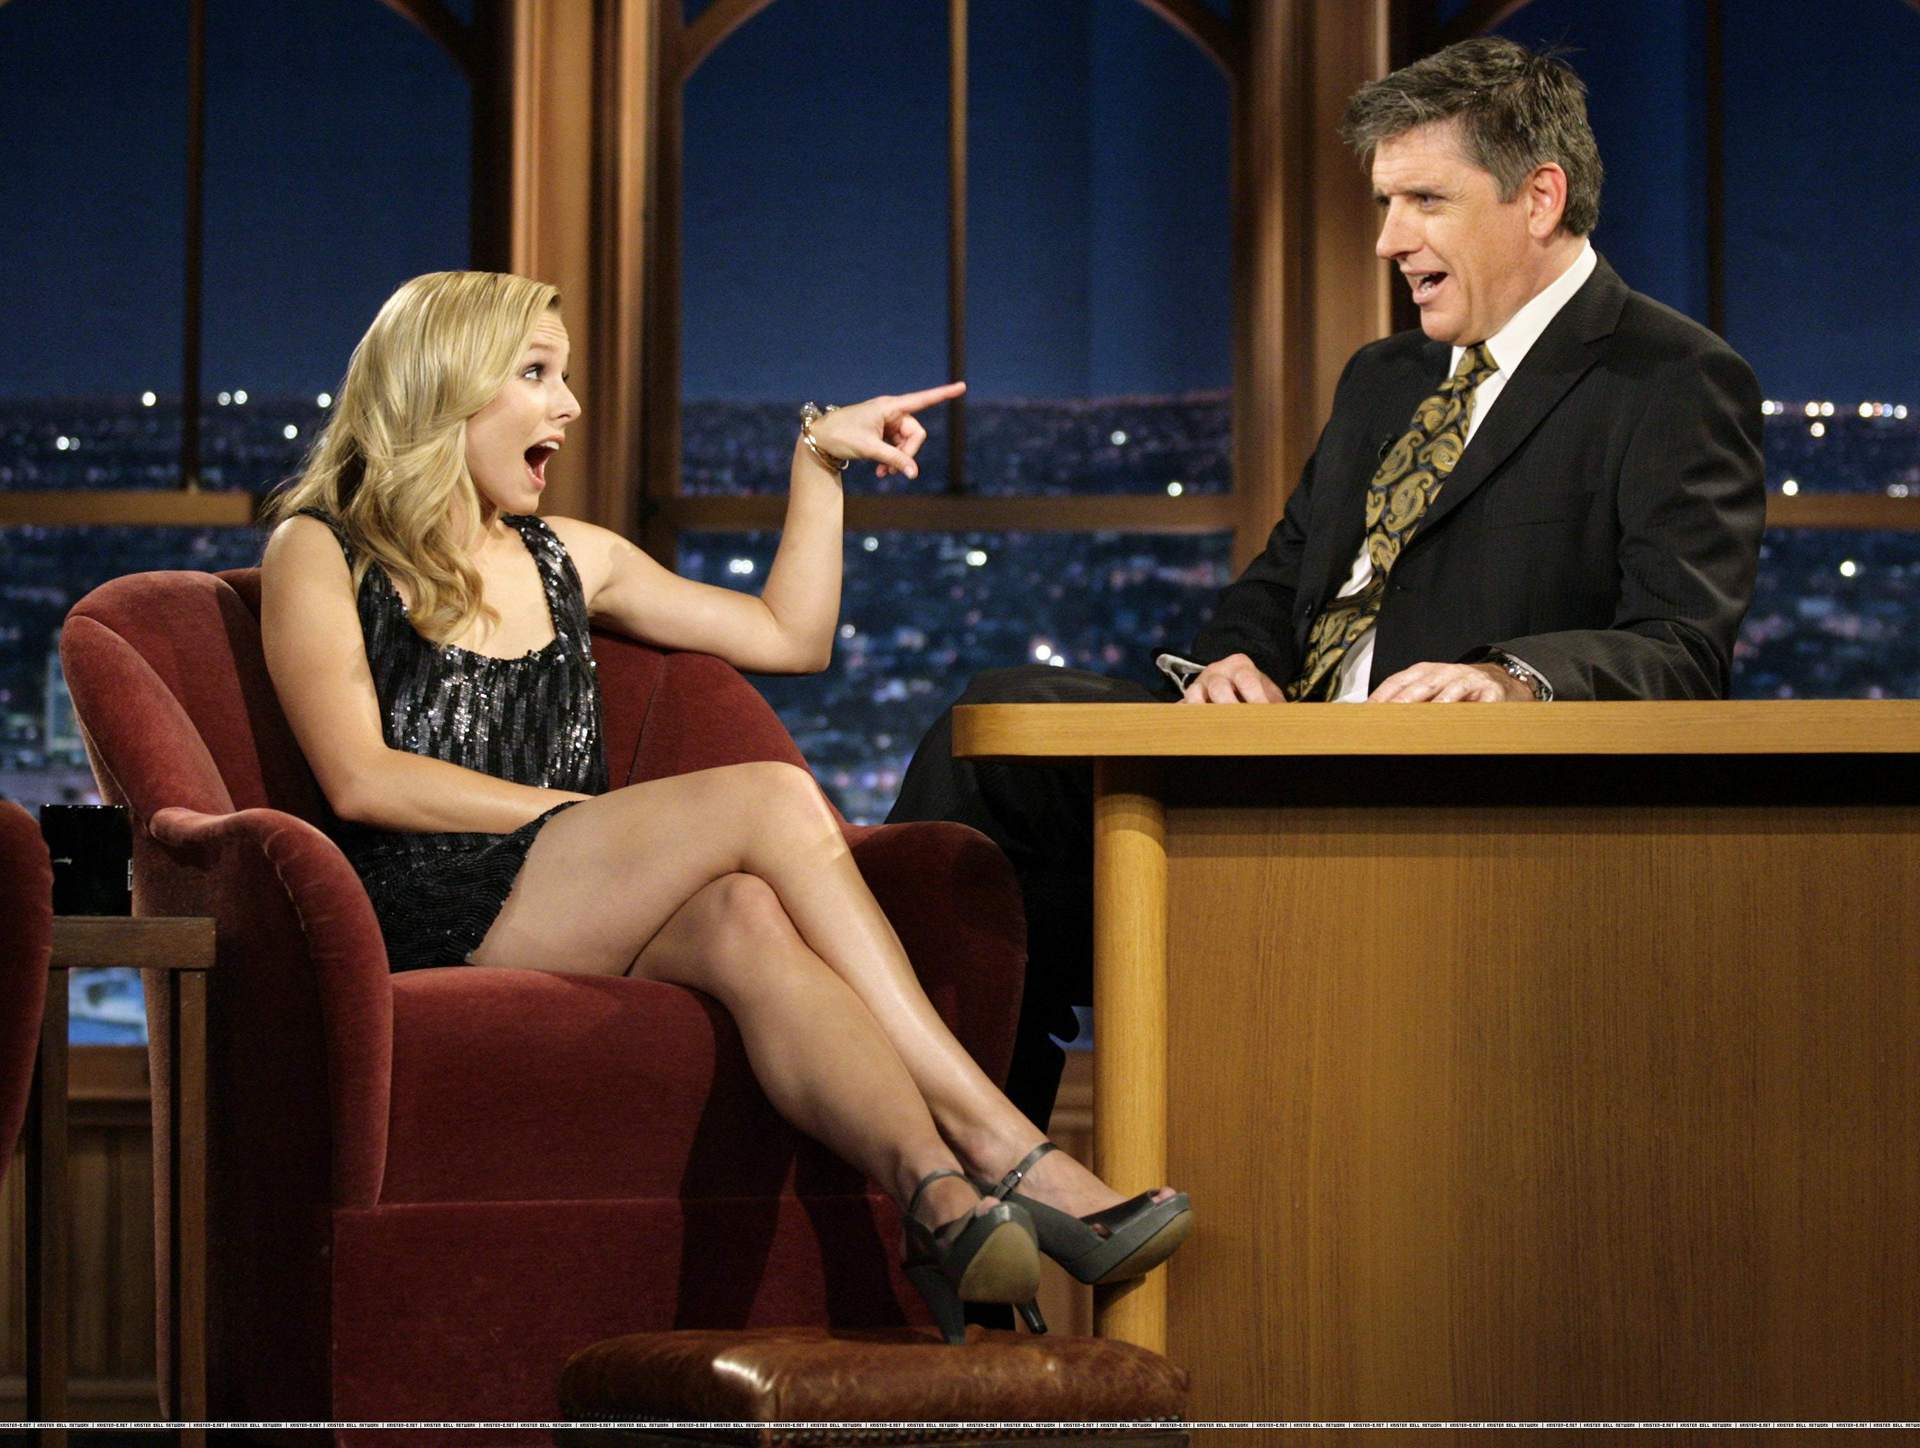 Kristen Bell, celebrity, high heels, Craig Ferguson, The Late Late Show - desktop wallpaper